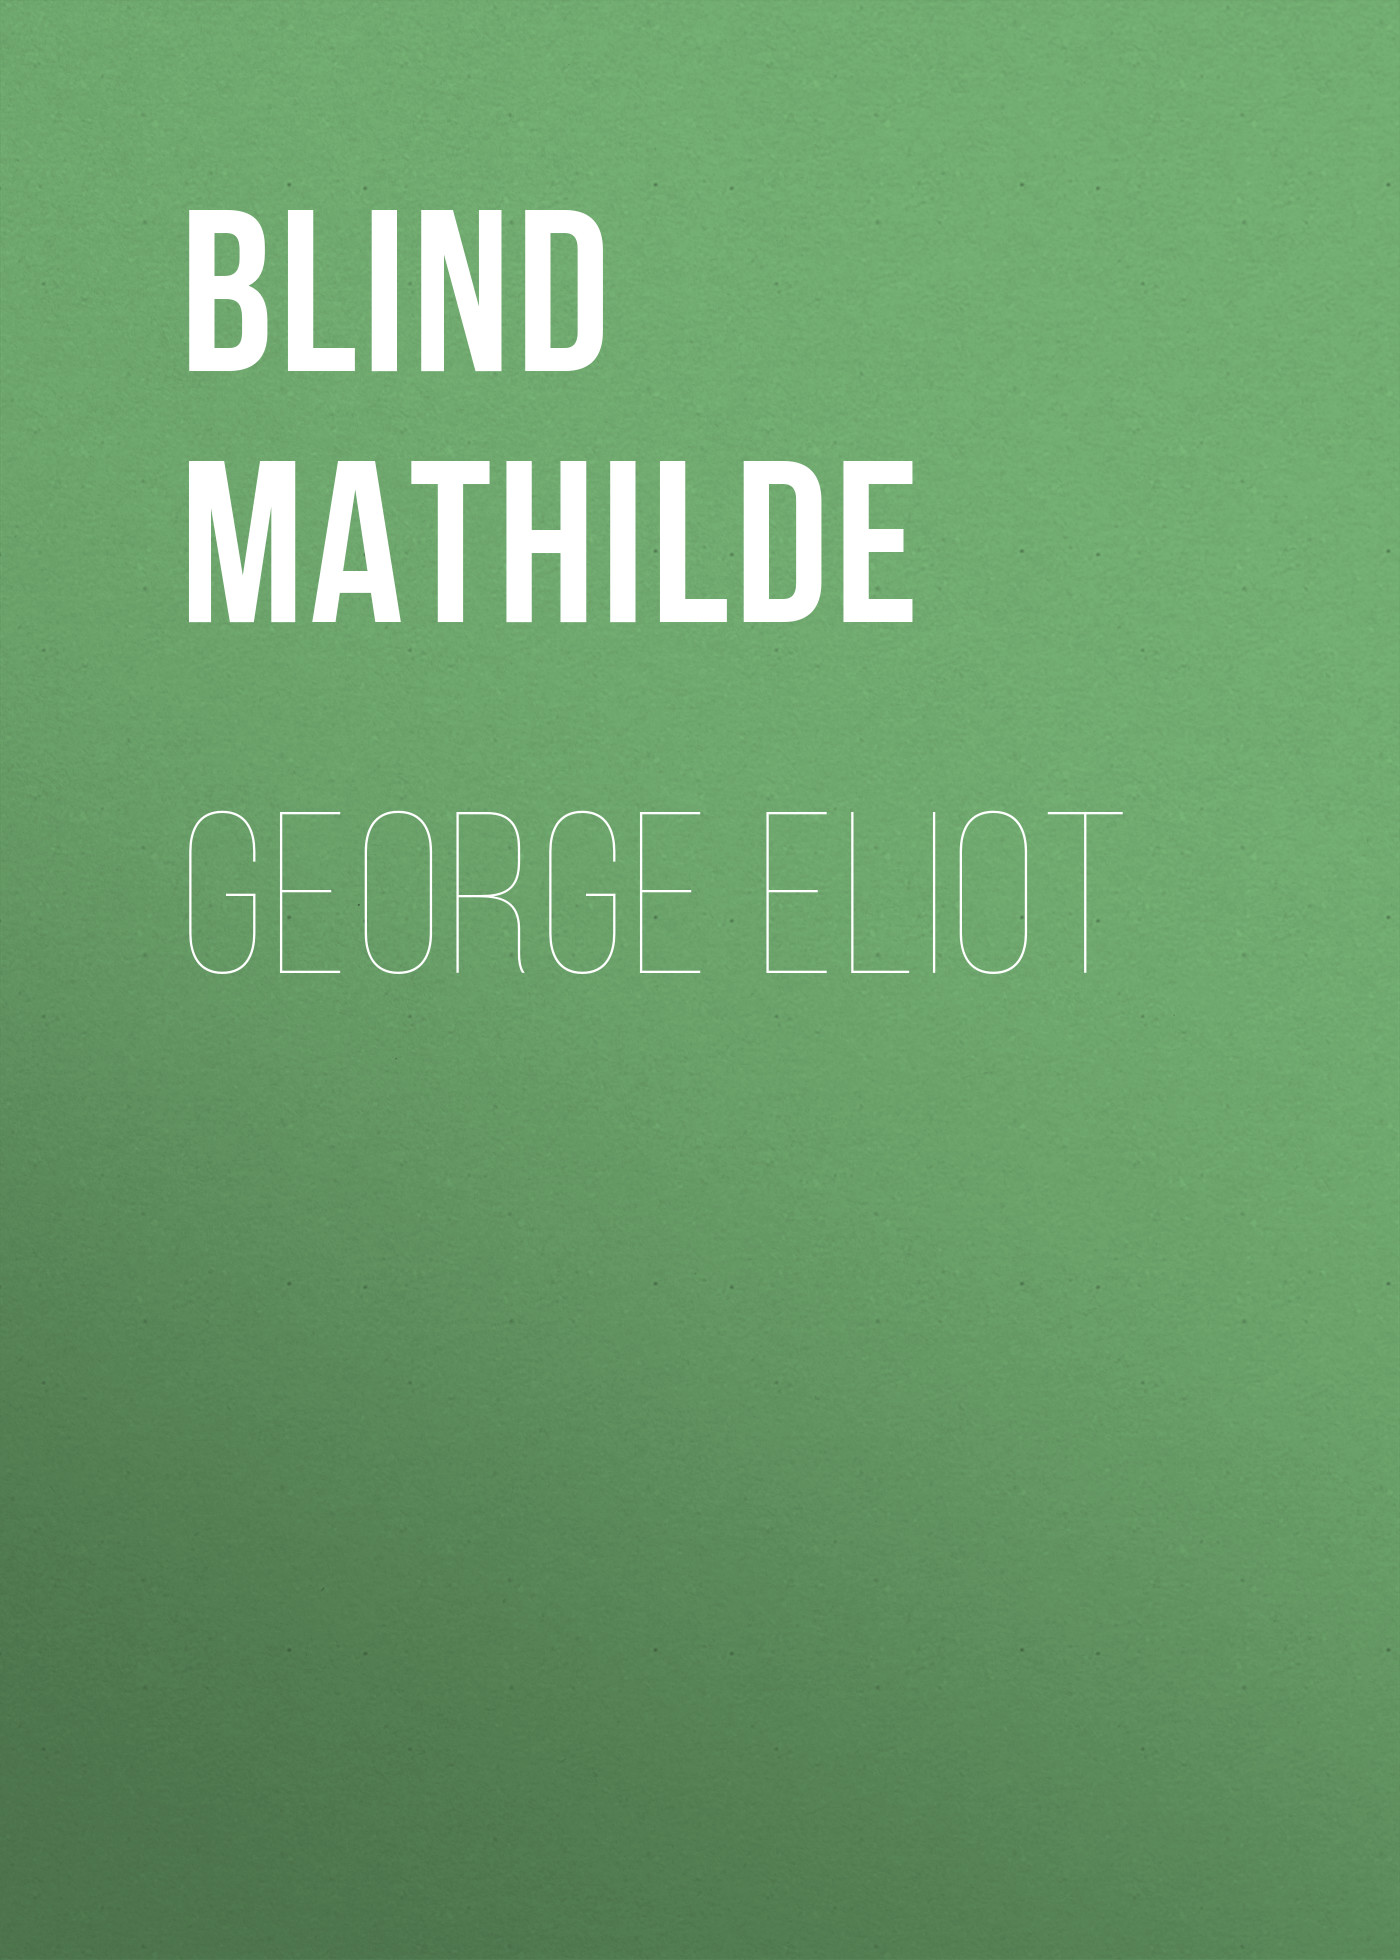 Книга George Eliot из серии , созданная Mathilde Blind, может относится к жанру Зарубежная старинная литература, Зарубежная классика, Биографии и Мемуары. Стоимость электронной книги George Eliot с идентификатором 24173788 составляет 0.90 руб.